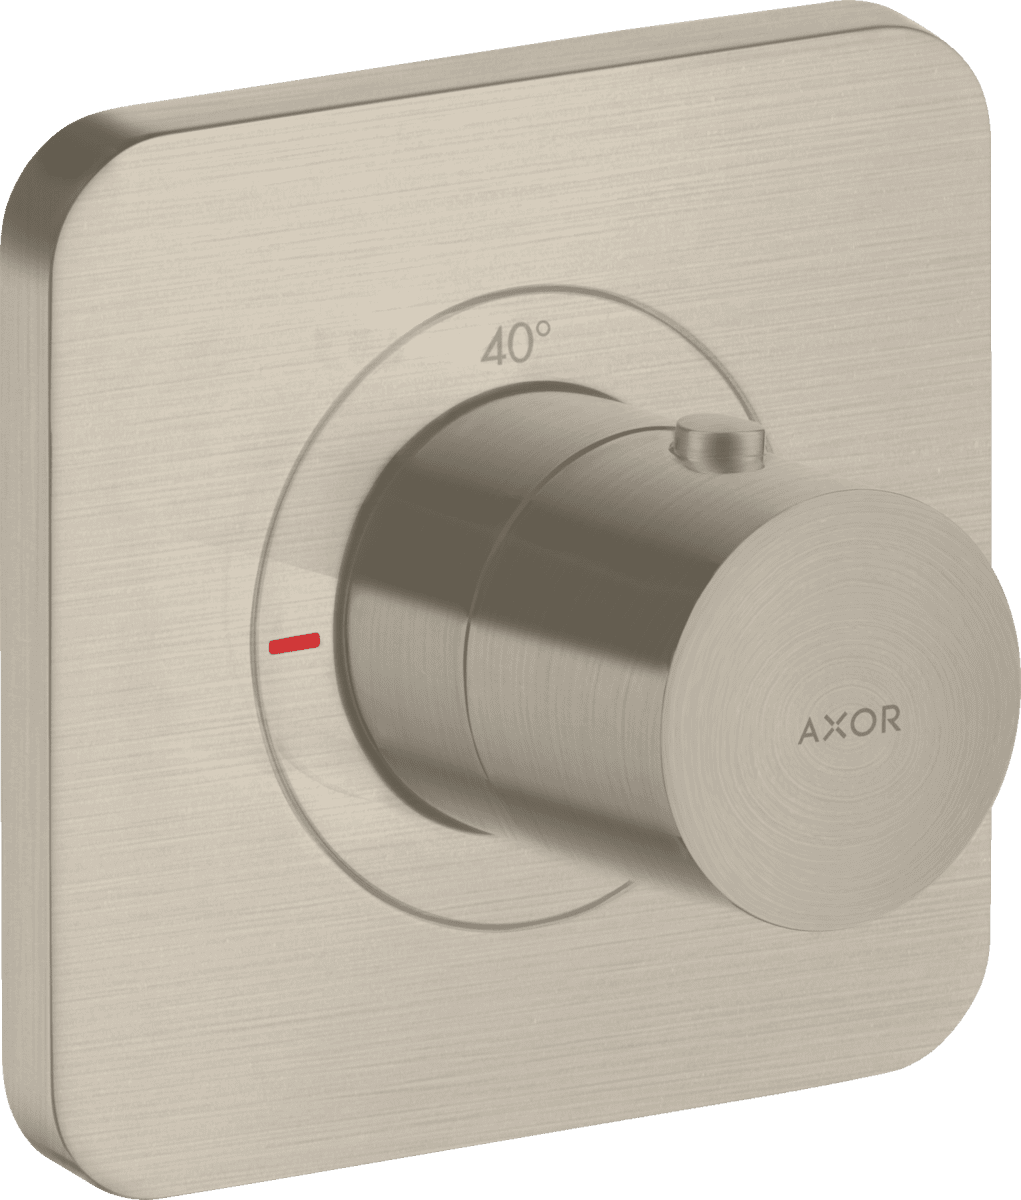 εικόνα του HANSGROHE AXOR Citterio E Thermostat 120/120 for concealed installation #36702820 - Brushed Nickel